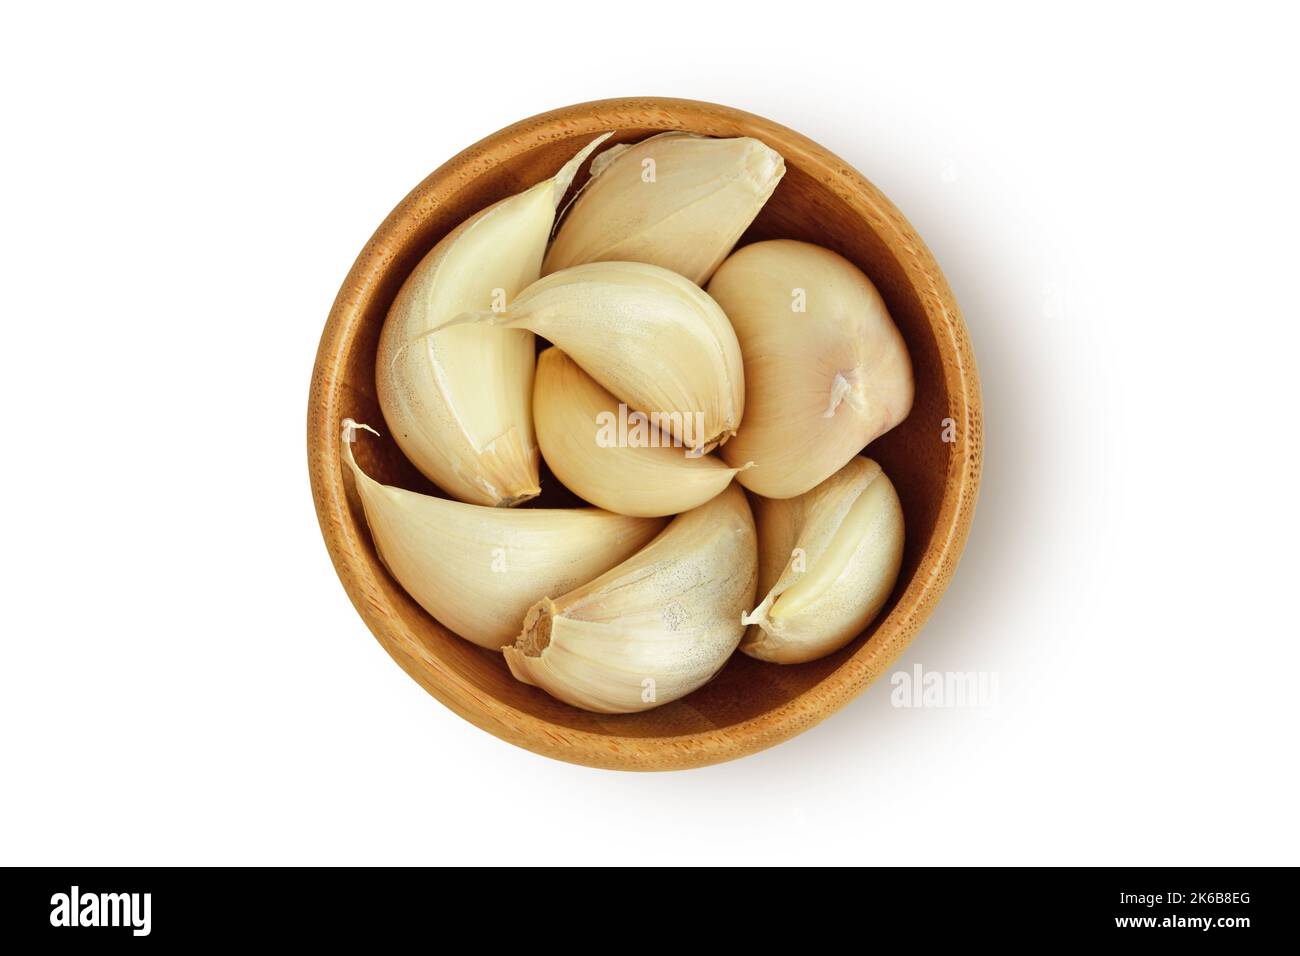 Spicchi d'aglio fresco in recipiente di legno su fondo bianco Foto Stock